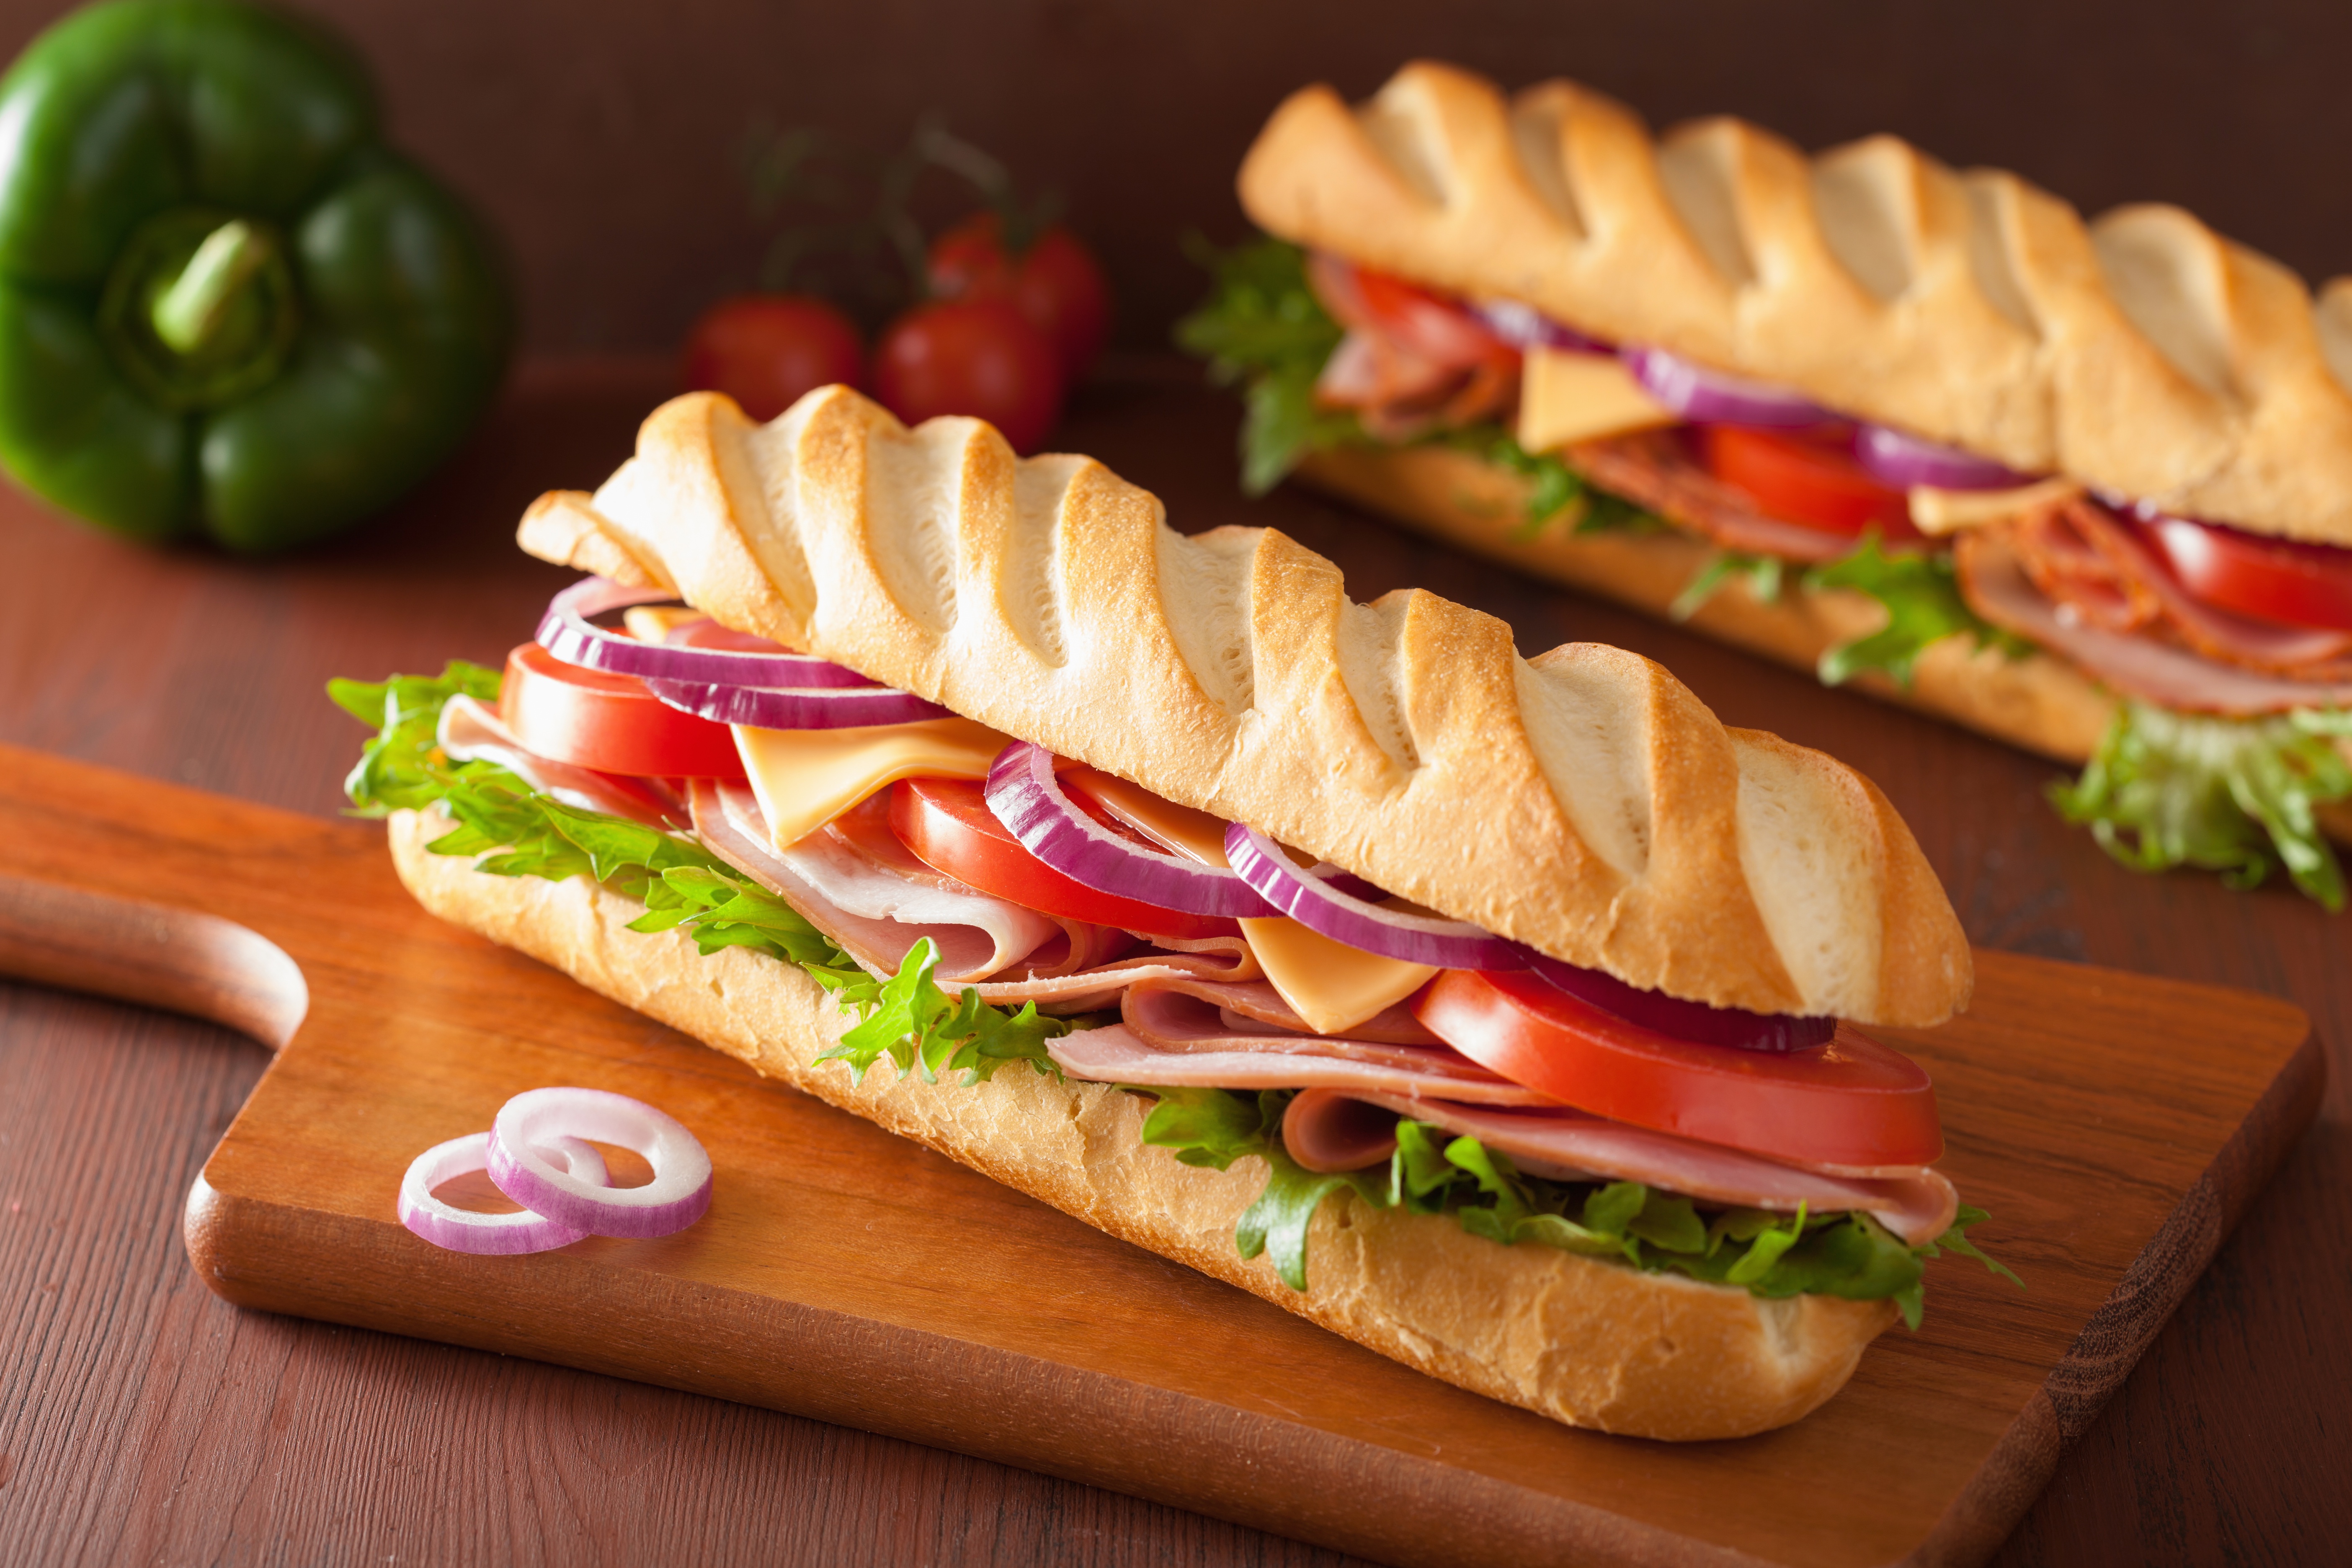 Free download wallpaper Food, Bread, Sandwich on your PC desktop